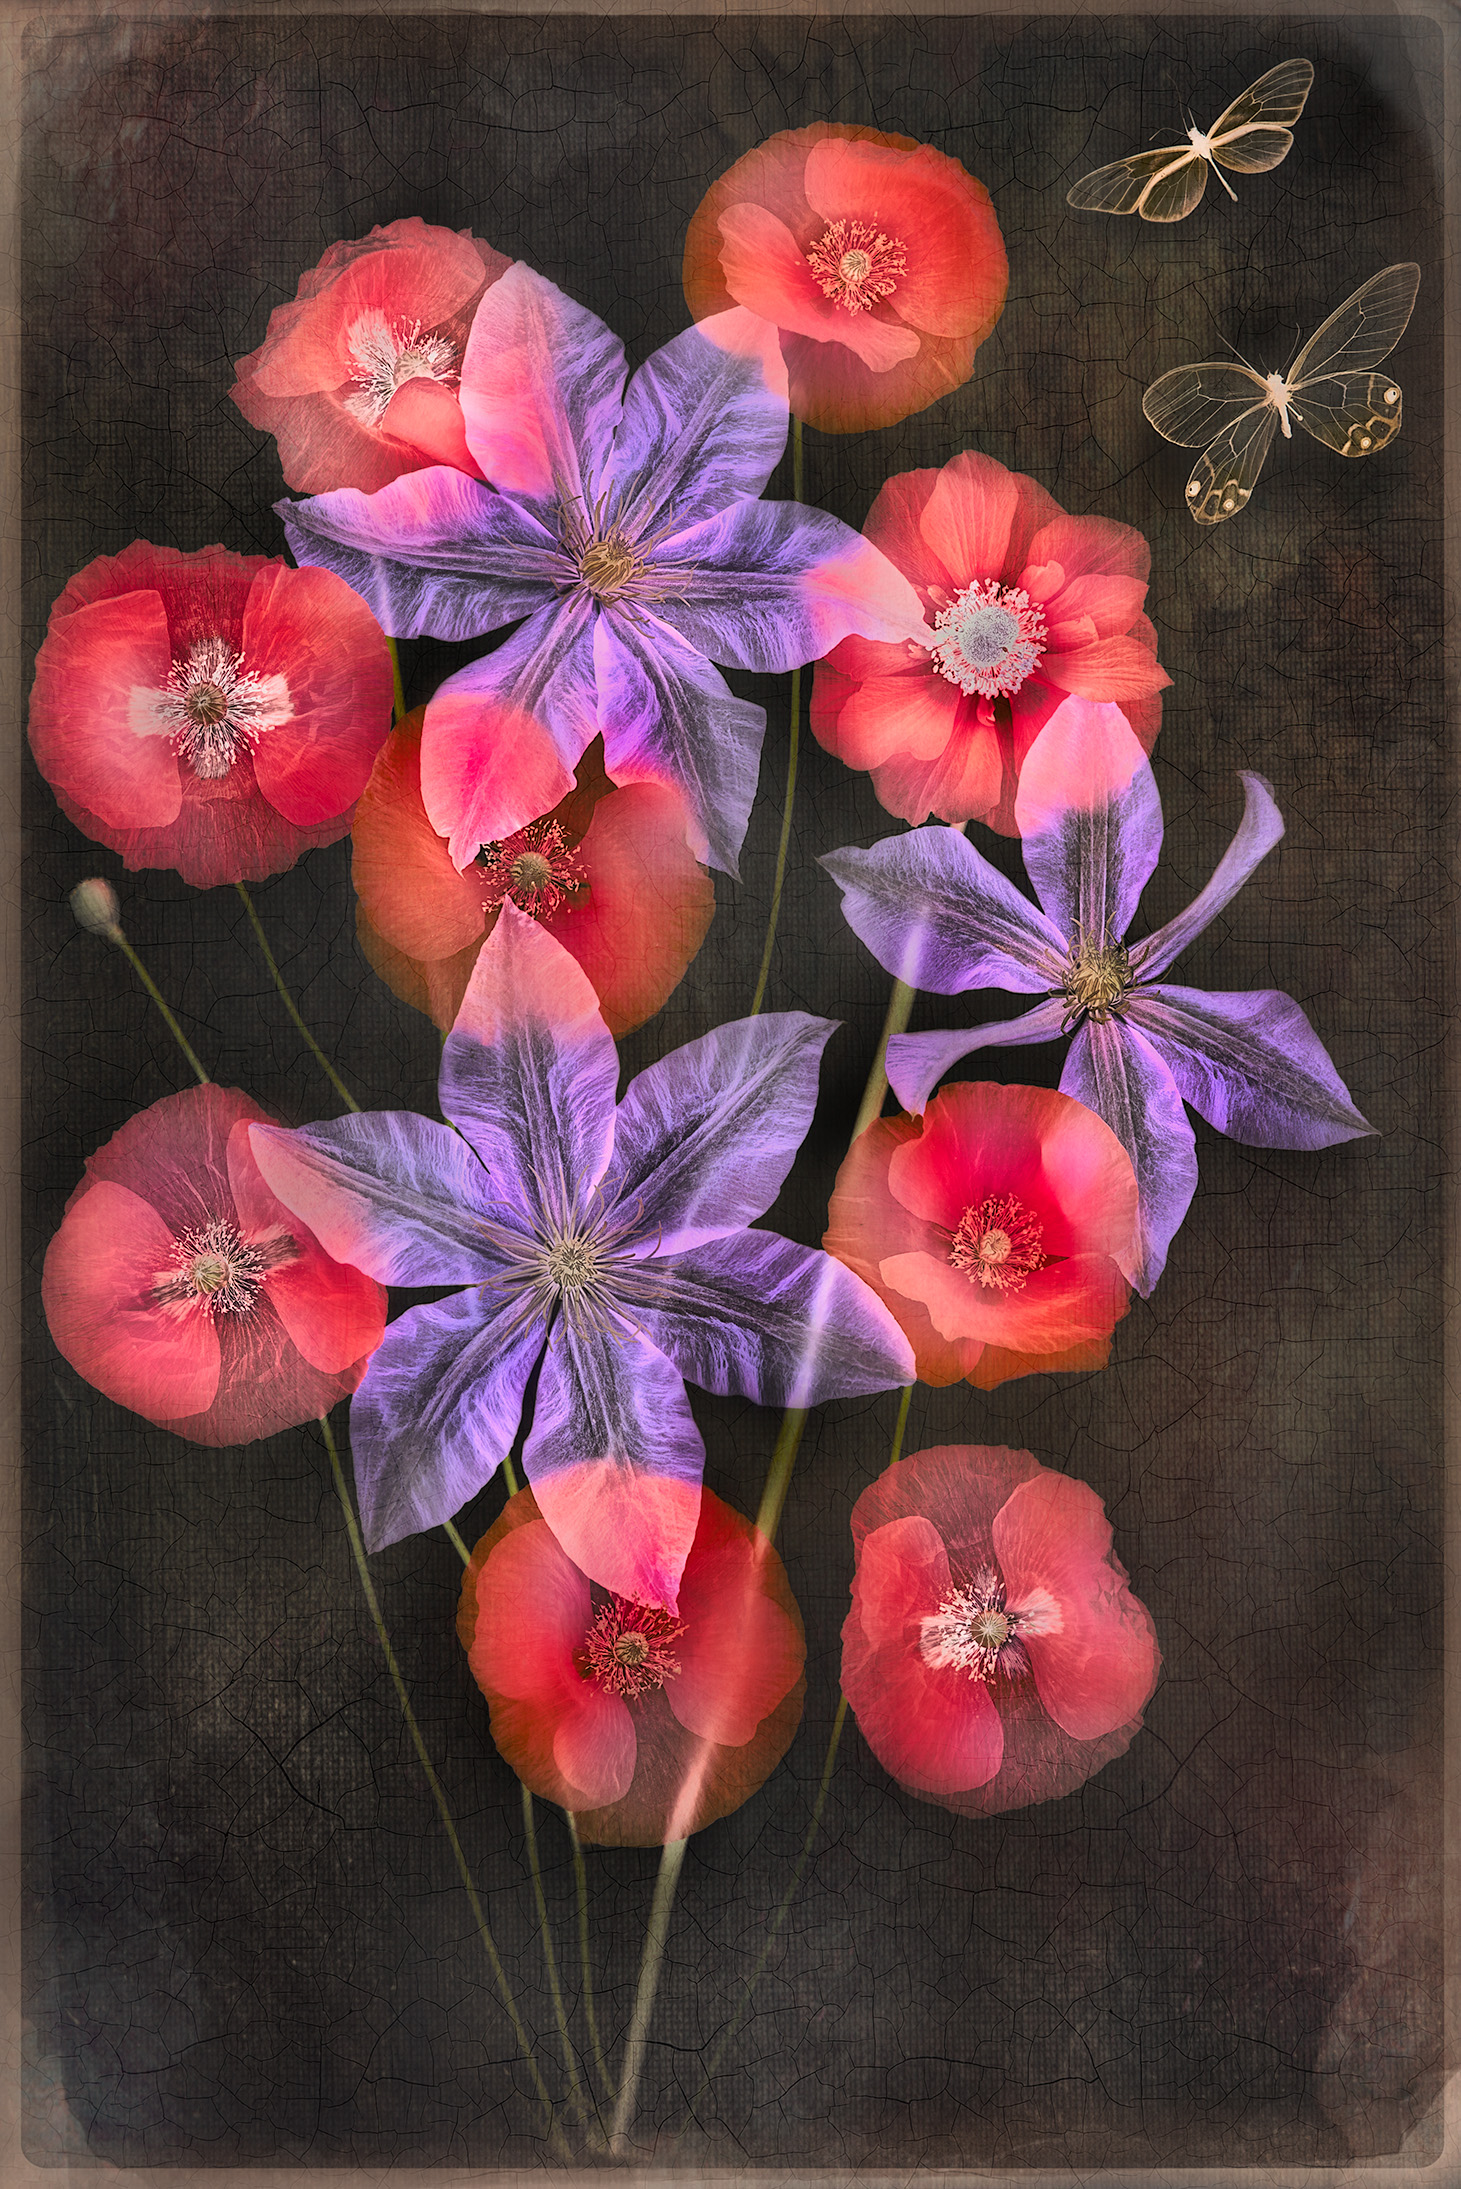 Clematis, Poppies, and Butterflies © Harold Davis